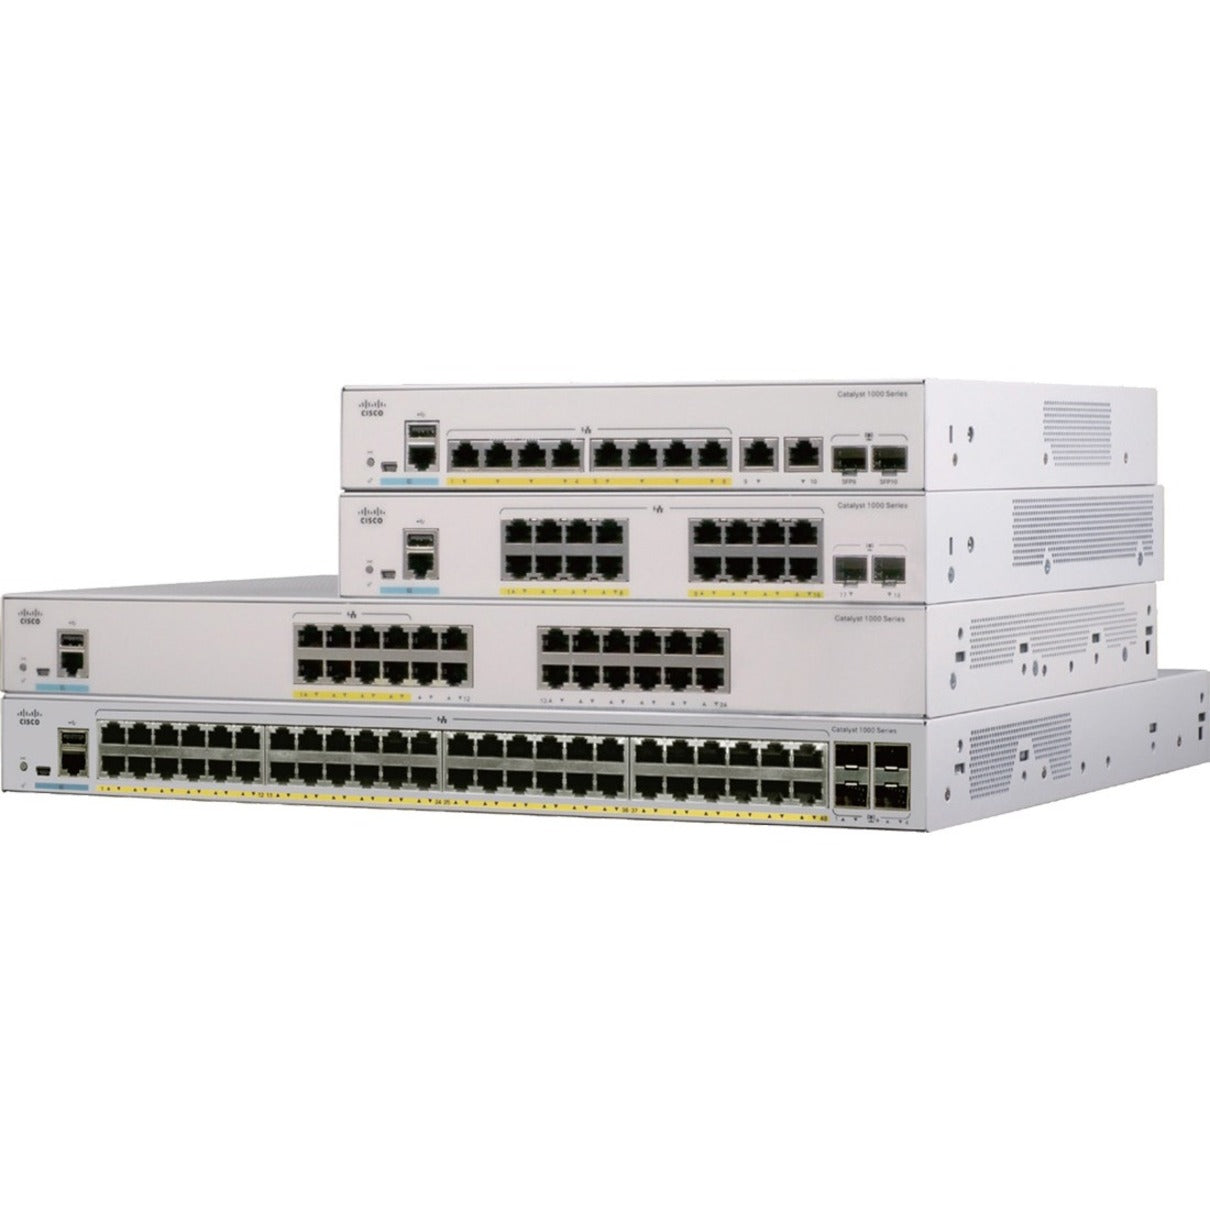 Cisco Catalyst 1000 8 port GE, 2x1G SFP (C1000-8T-2G-L)